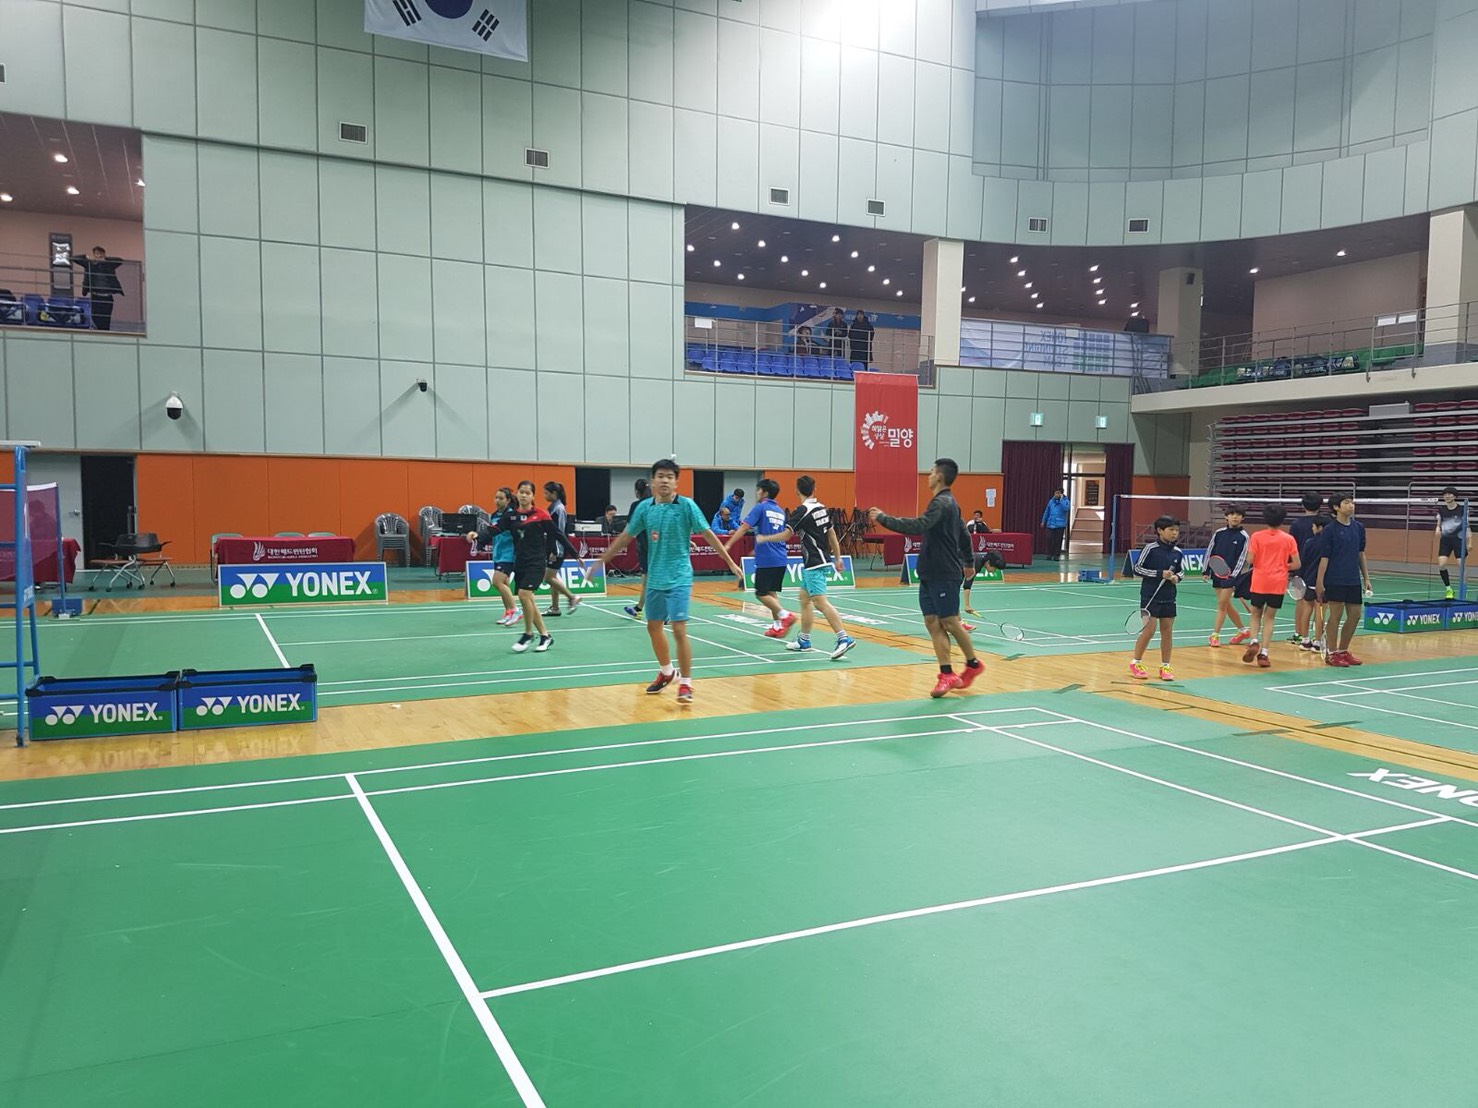 การแข่งขันแบดมินตัน YONEX Korea Junior Badminton Championships 2017 รอบก่อนรองชนะเลิศ